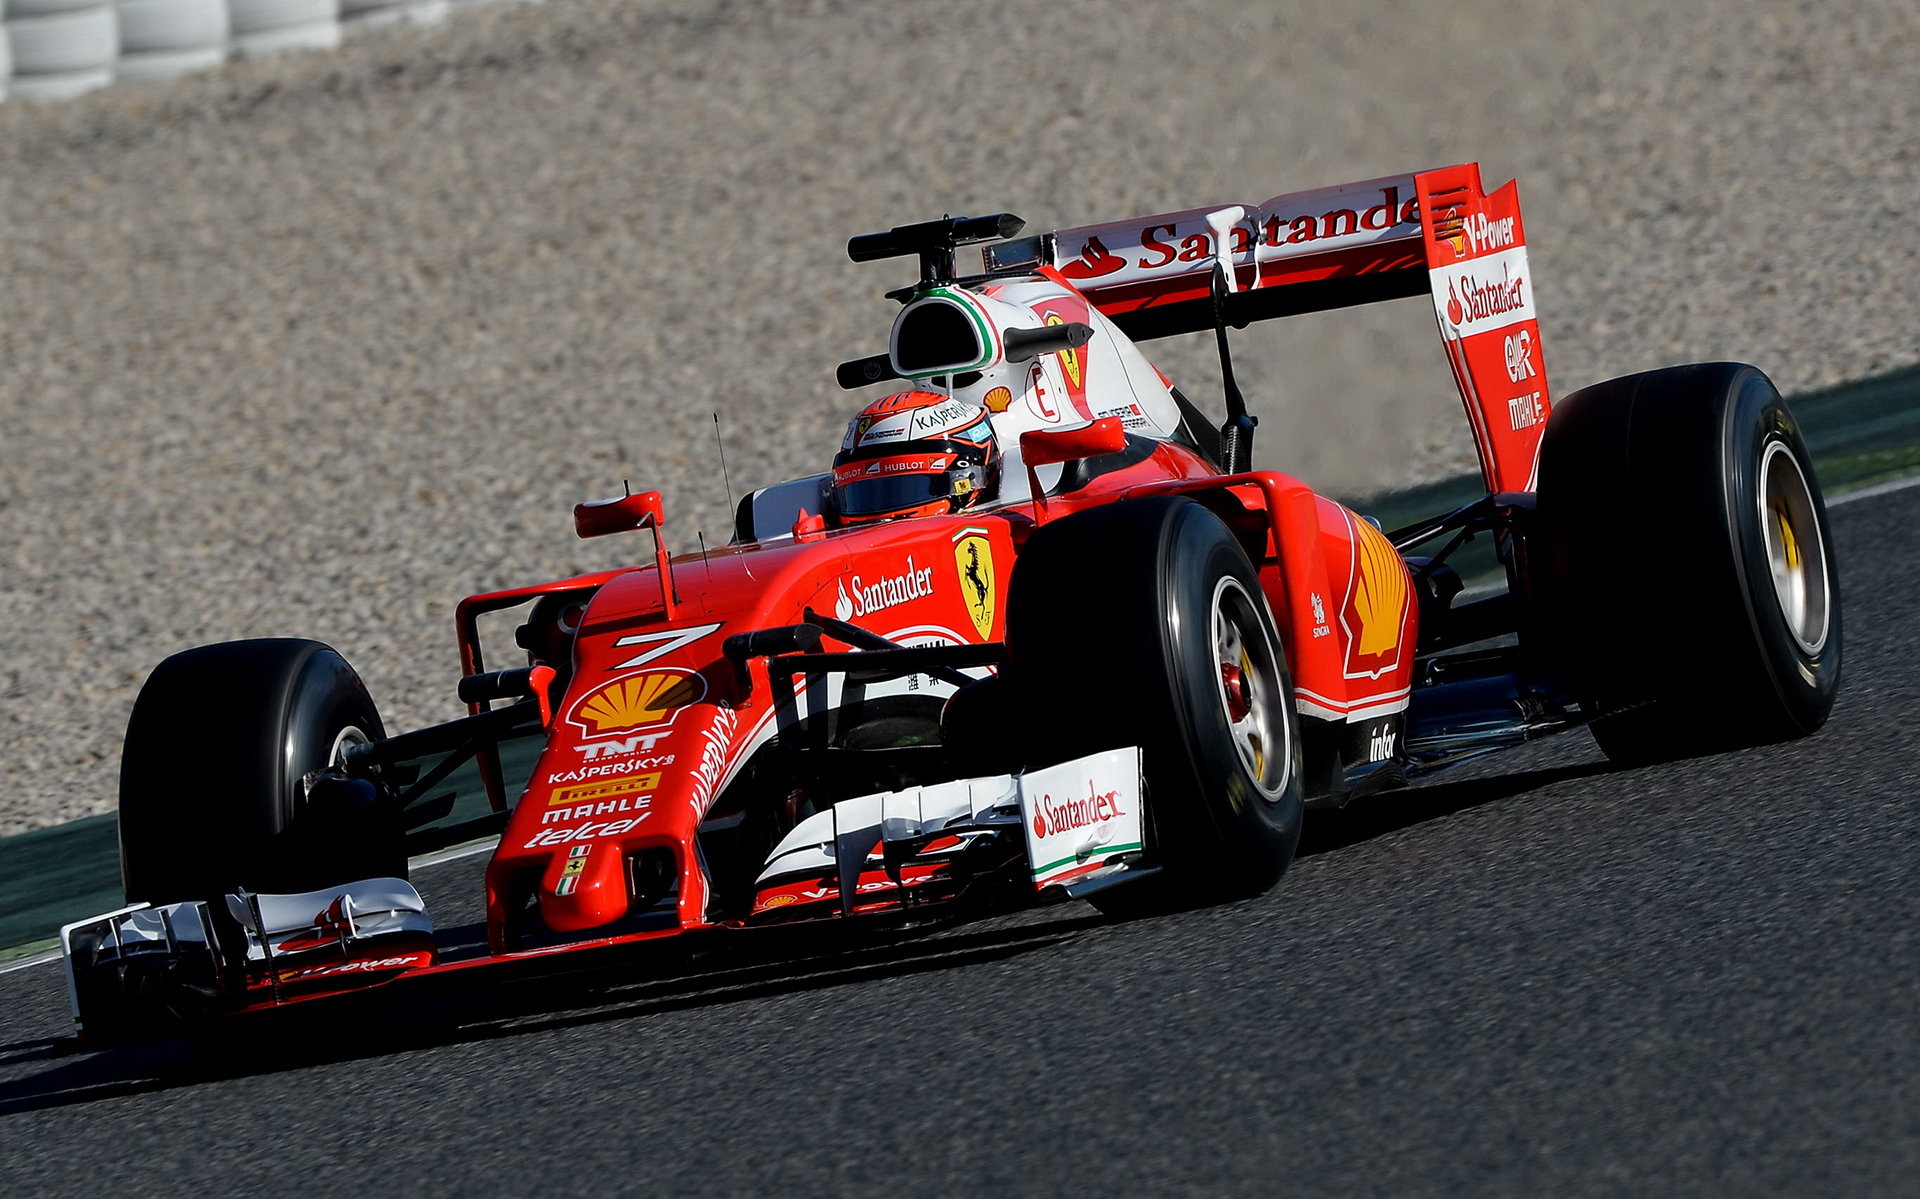 Kimi Räikkönen při posledních předsezonních testech v Barceloně s novým vozem Ferrari SF16-H